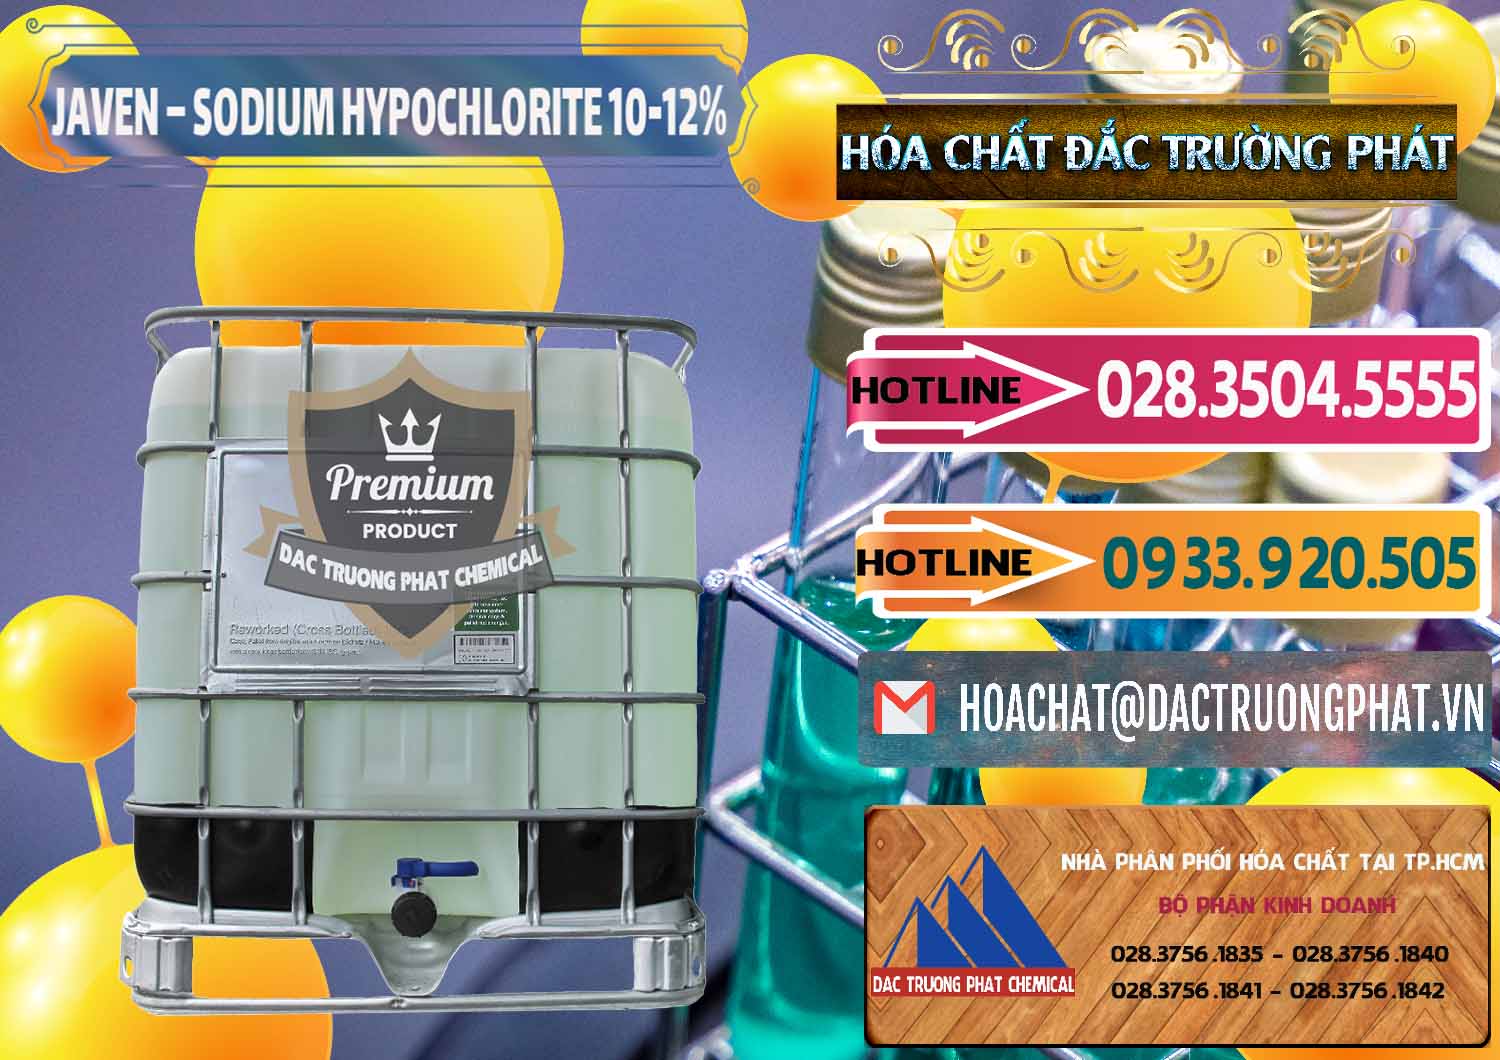 Nhà cung cấp - kinh doanh Javen - Sodium Hypochlorite 10-12% Việt Nam - 0188 - Nơi chuyên cung cấp _ kinh doanh hóa chất tại TP.HCM - dactruongphat.vn